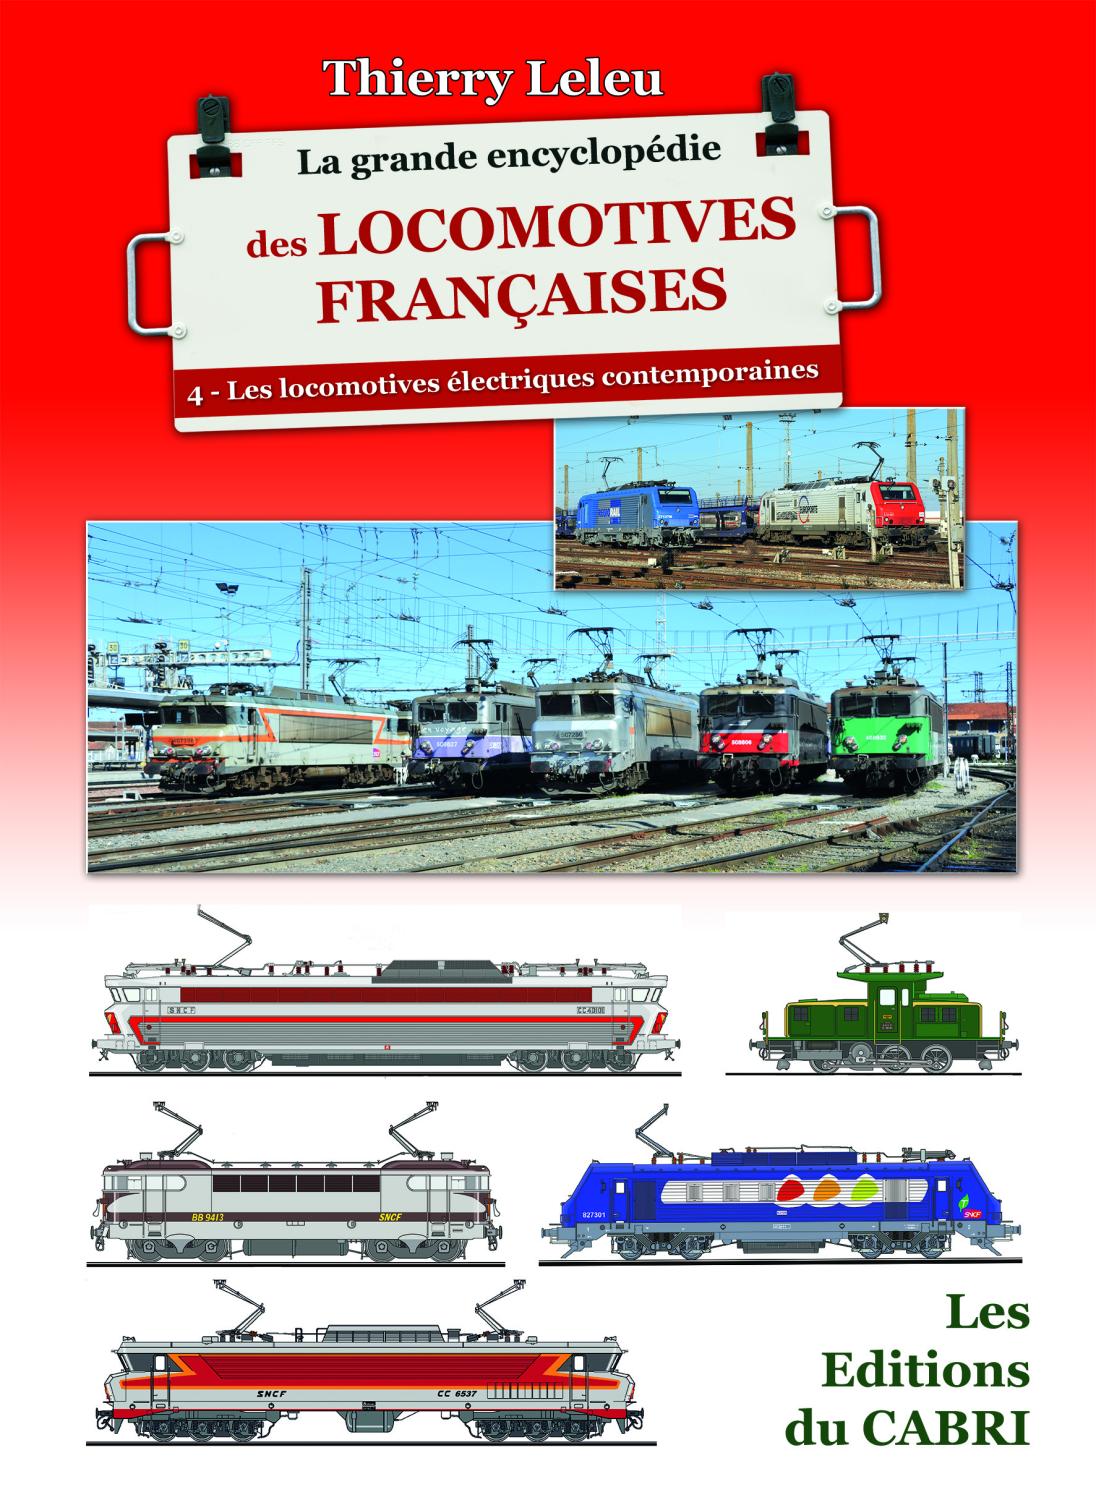 locomotive électrique — Wiktionnaire, le dictionnaire libre